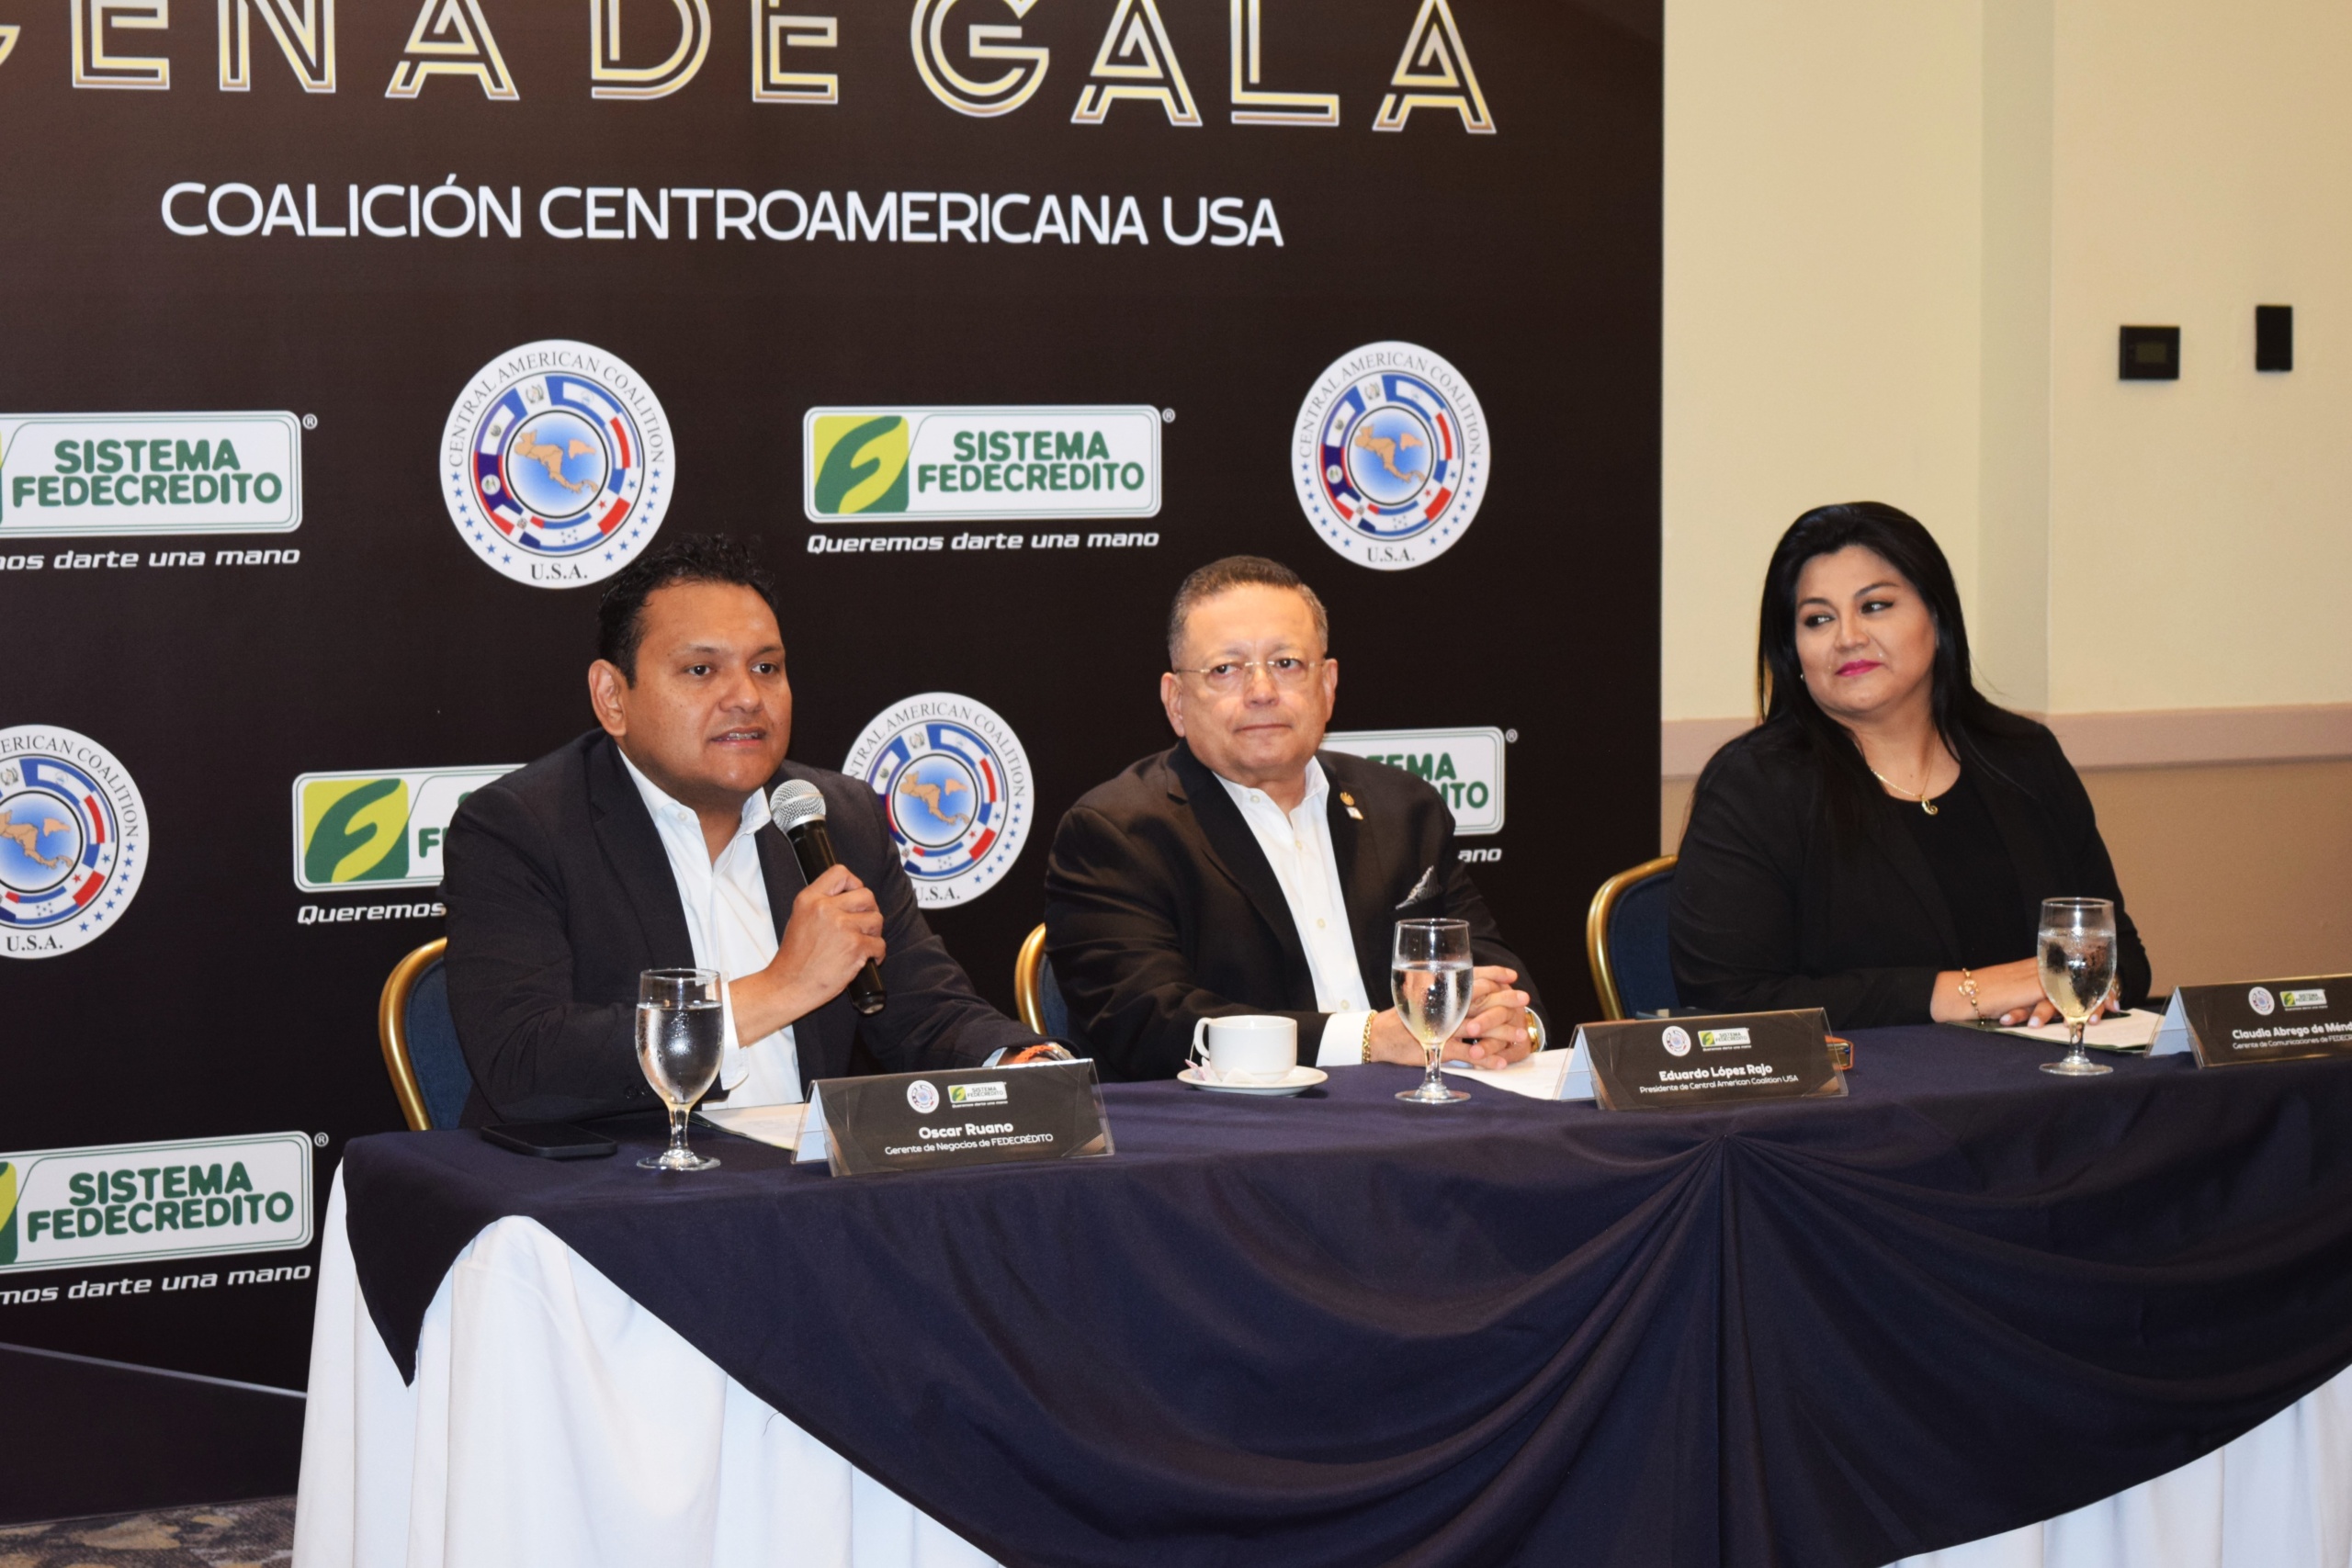 SISTEMA FEDECREDITO patrocinador oficial de la XVIII cena de Gala de la Coalición Centroamericana USA